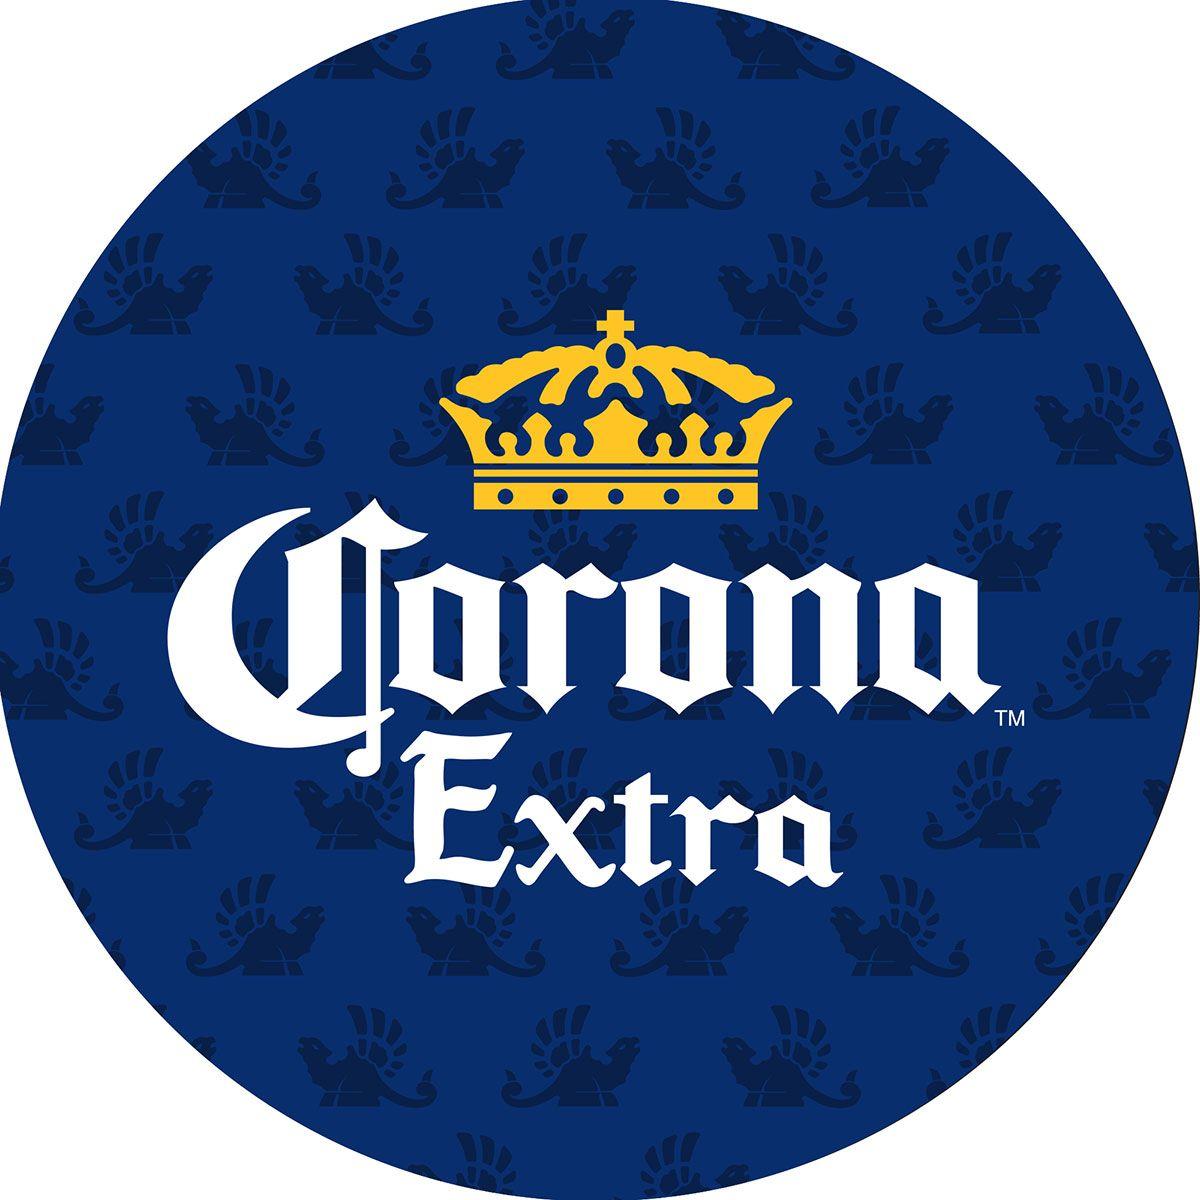 corona beer slogan